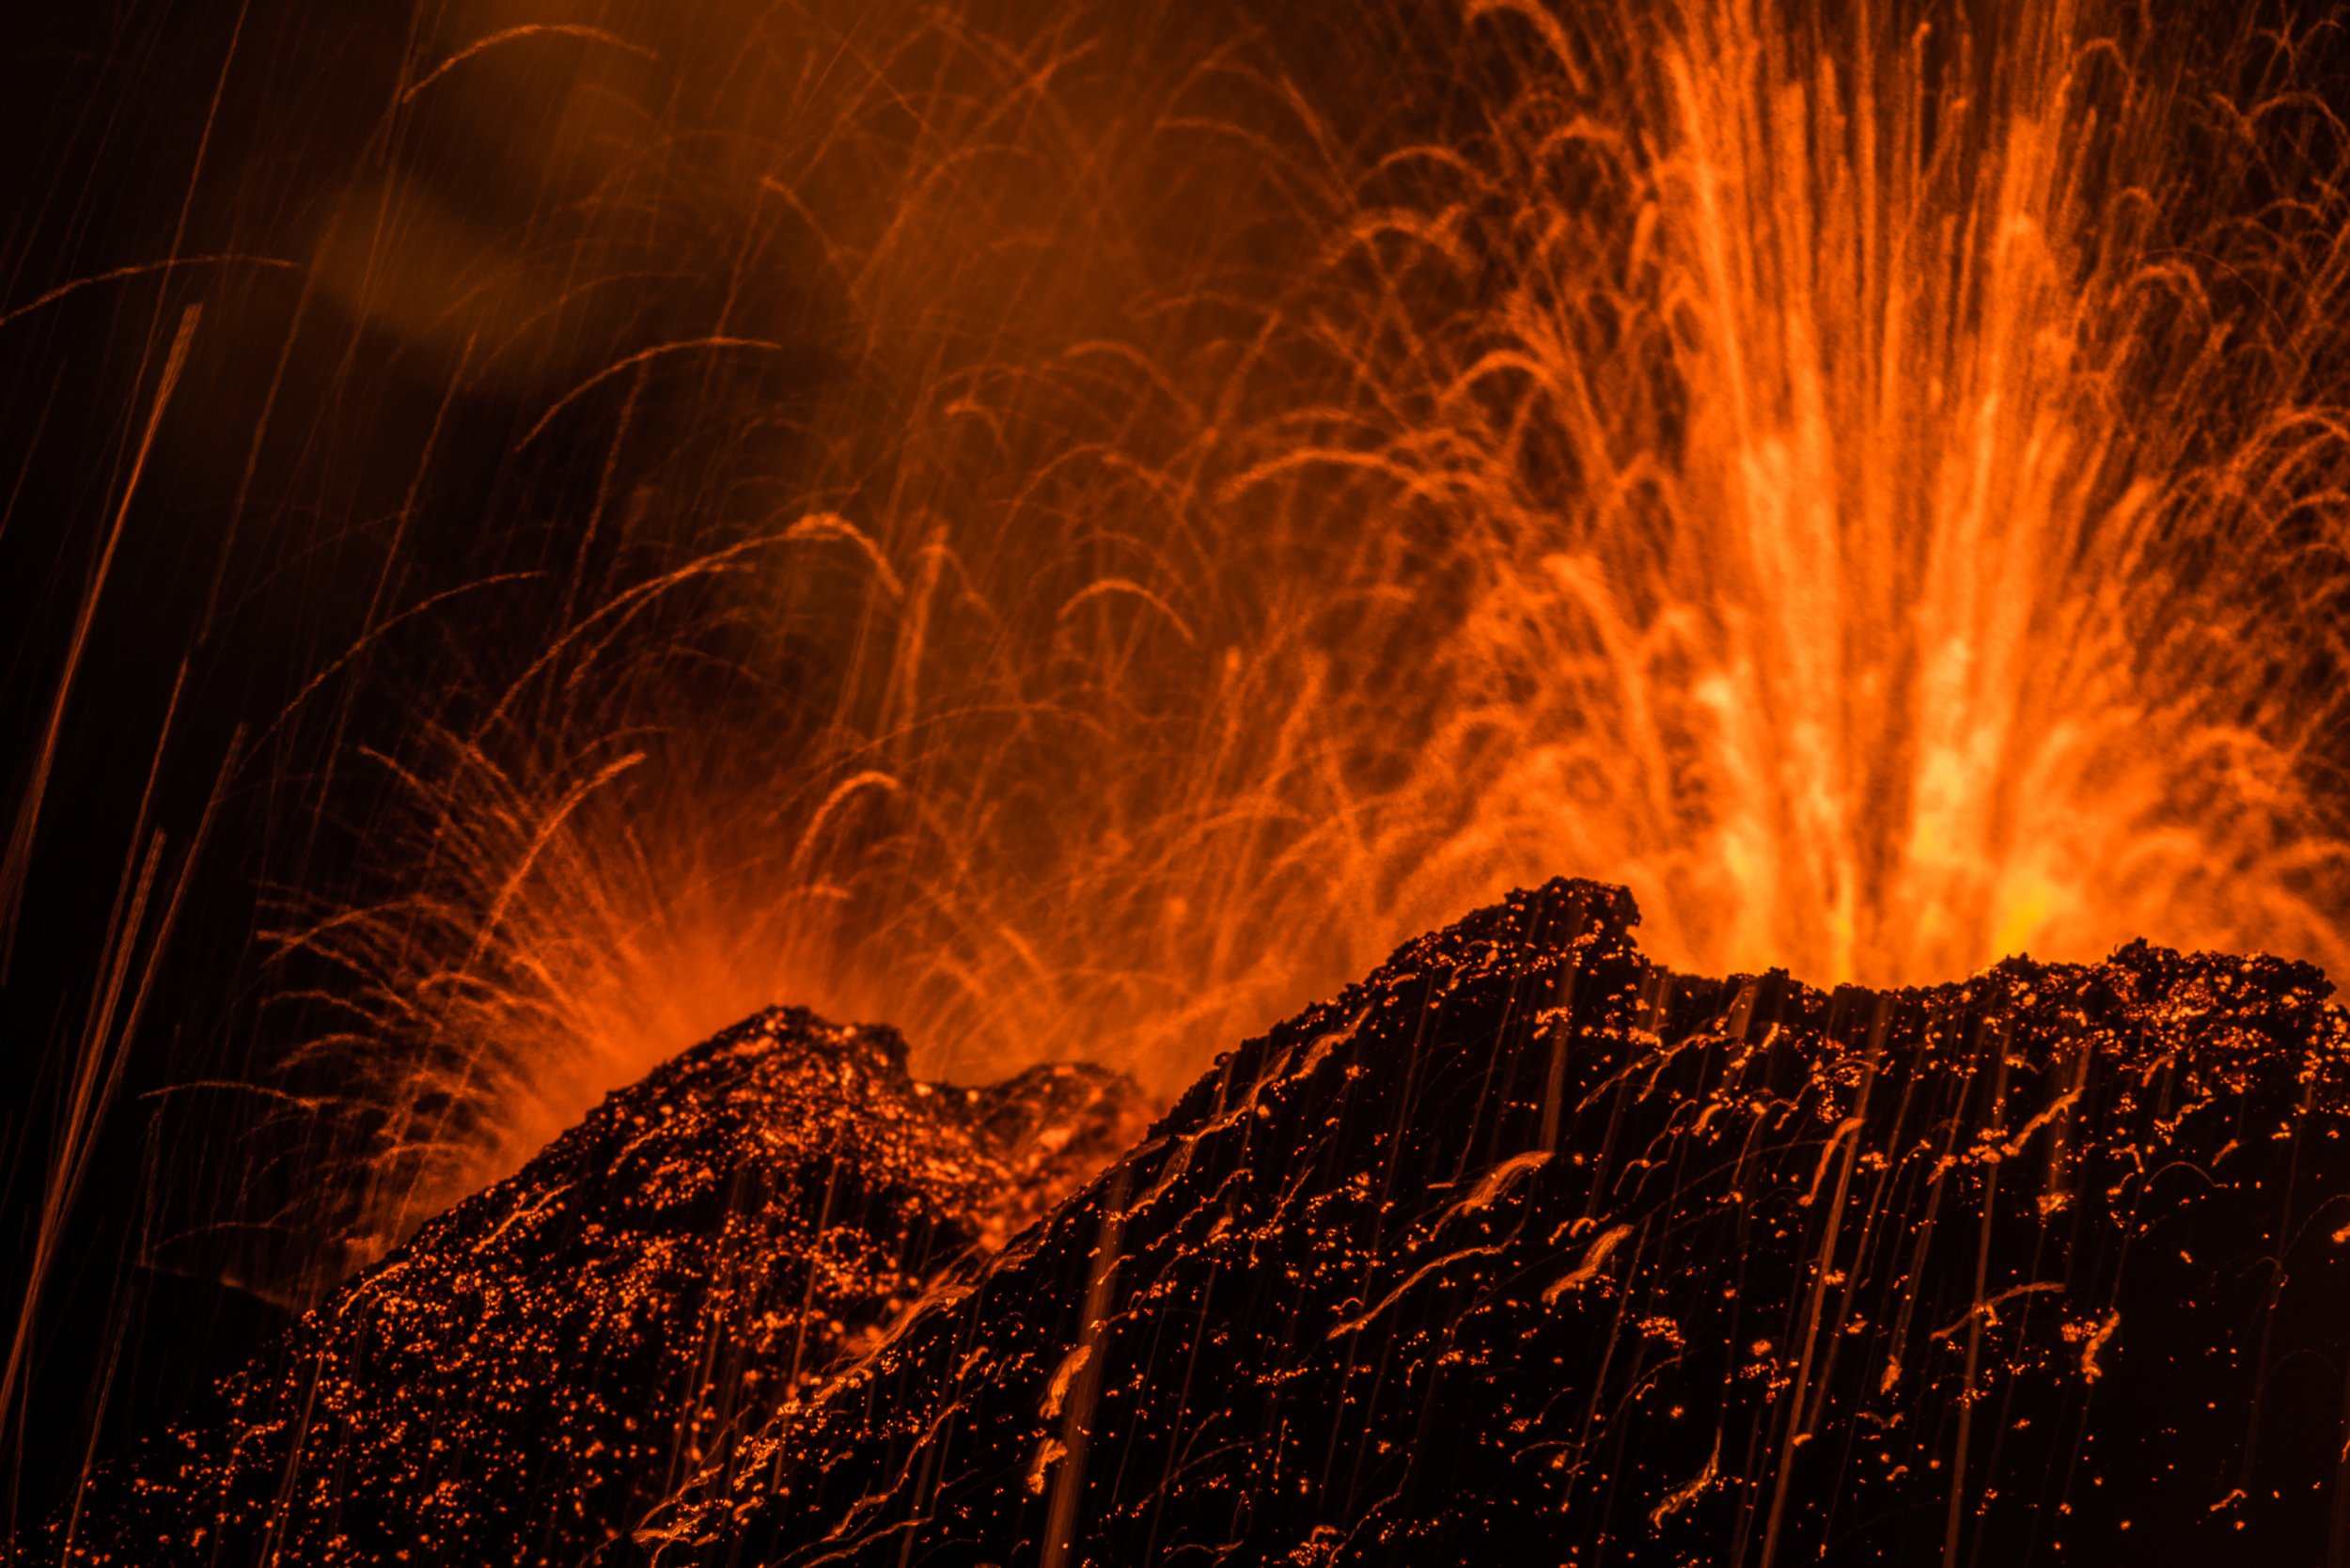 Piton de la Fournaise volcano